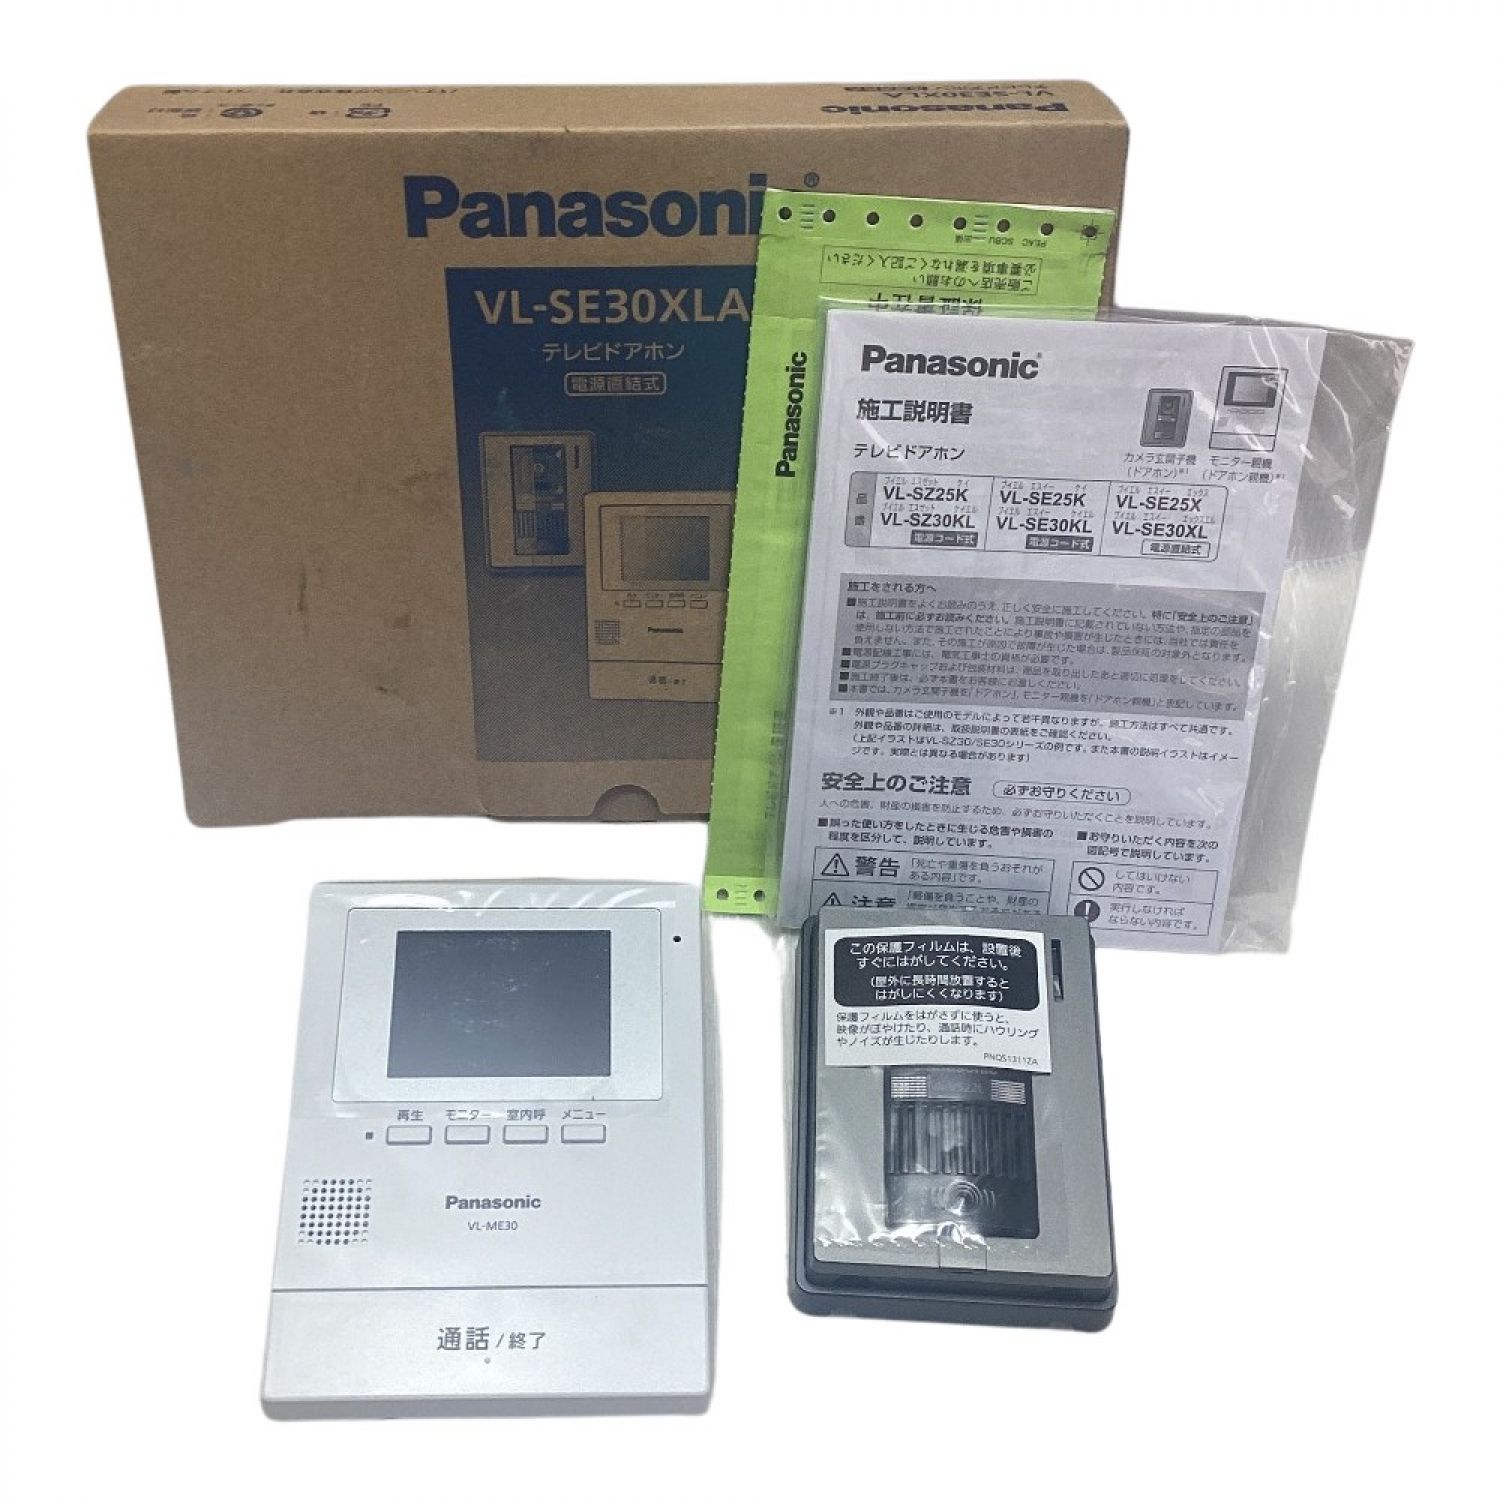 Panasonic VL-SE25K+apple-en.jp